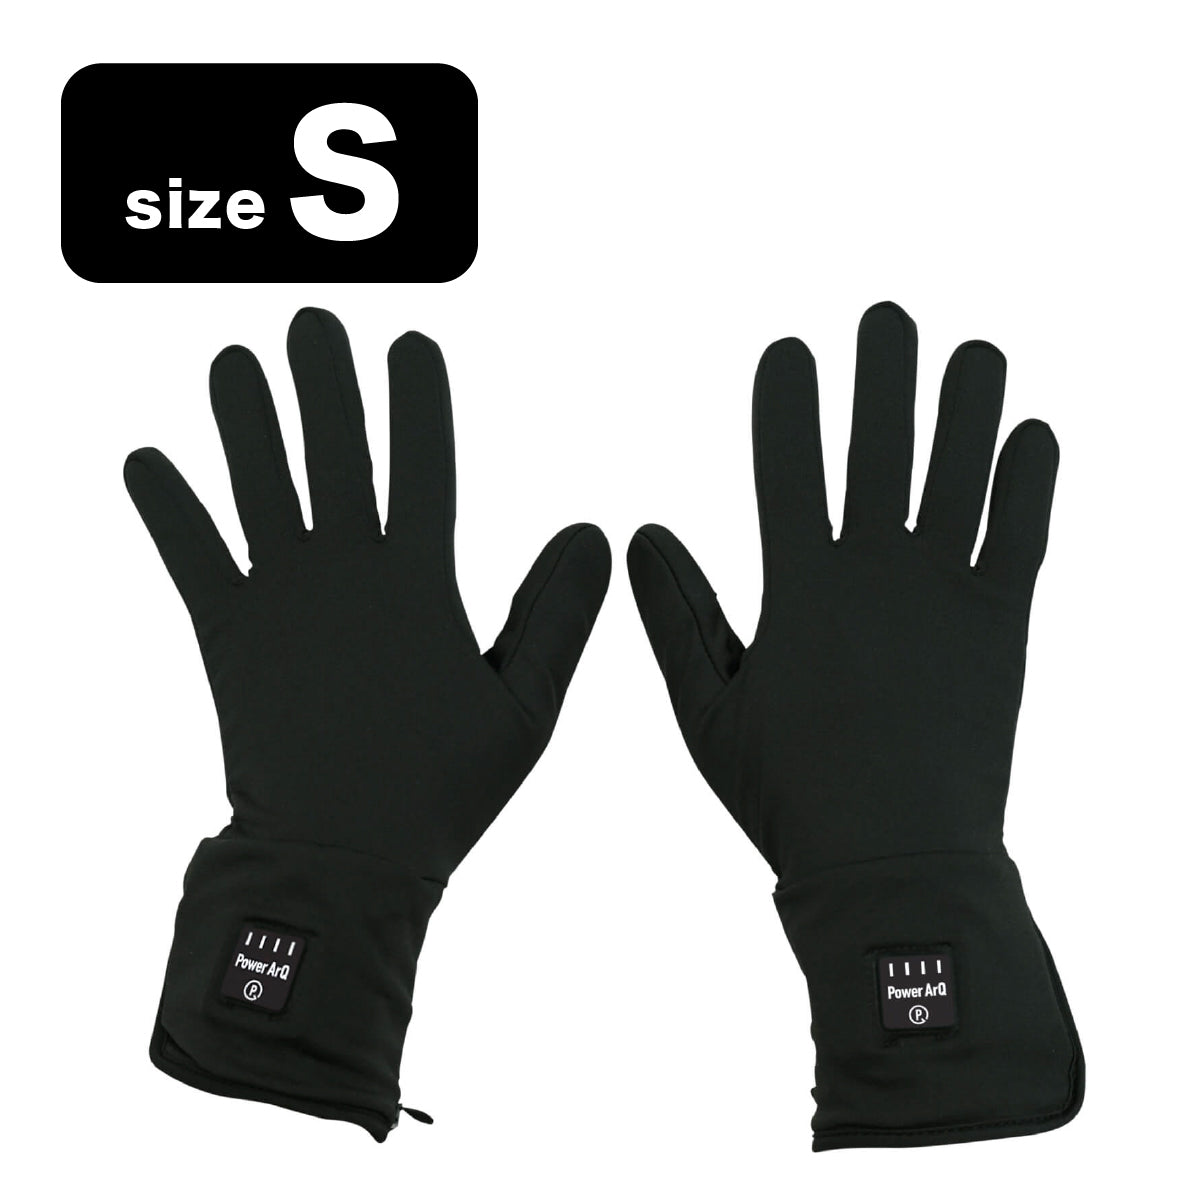 PowerArQ Electric Heated Gloves 電熱グローブ インナーグローブ バッテリー付き [ S / M / L サイズ]  メンズ レディース